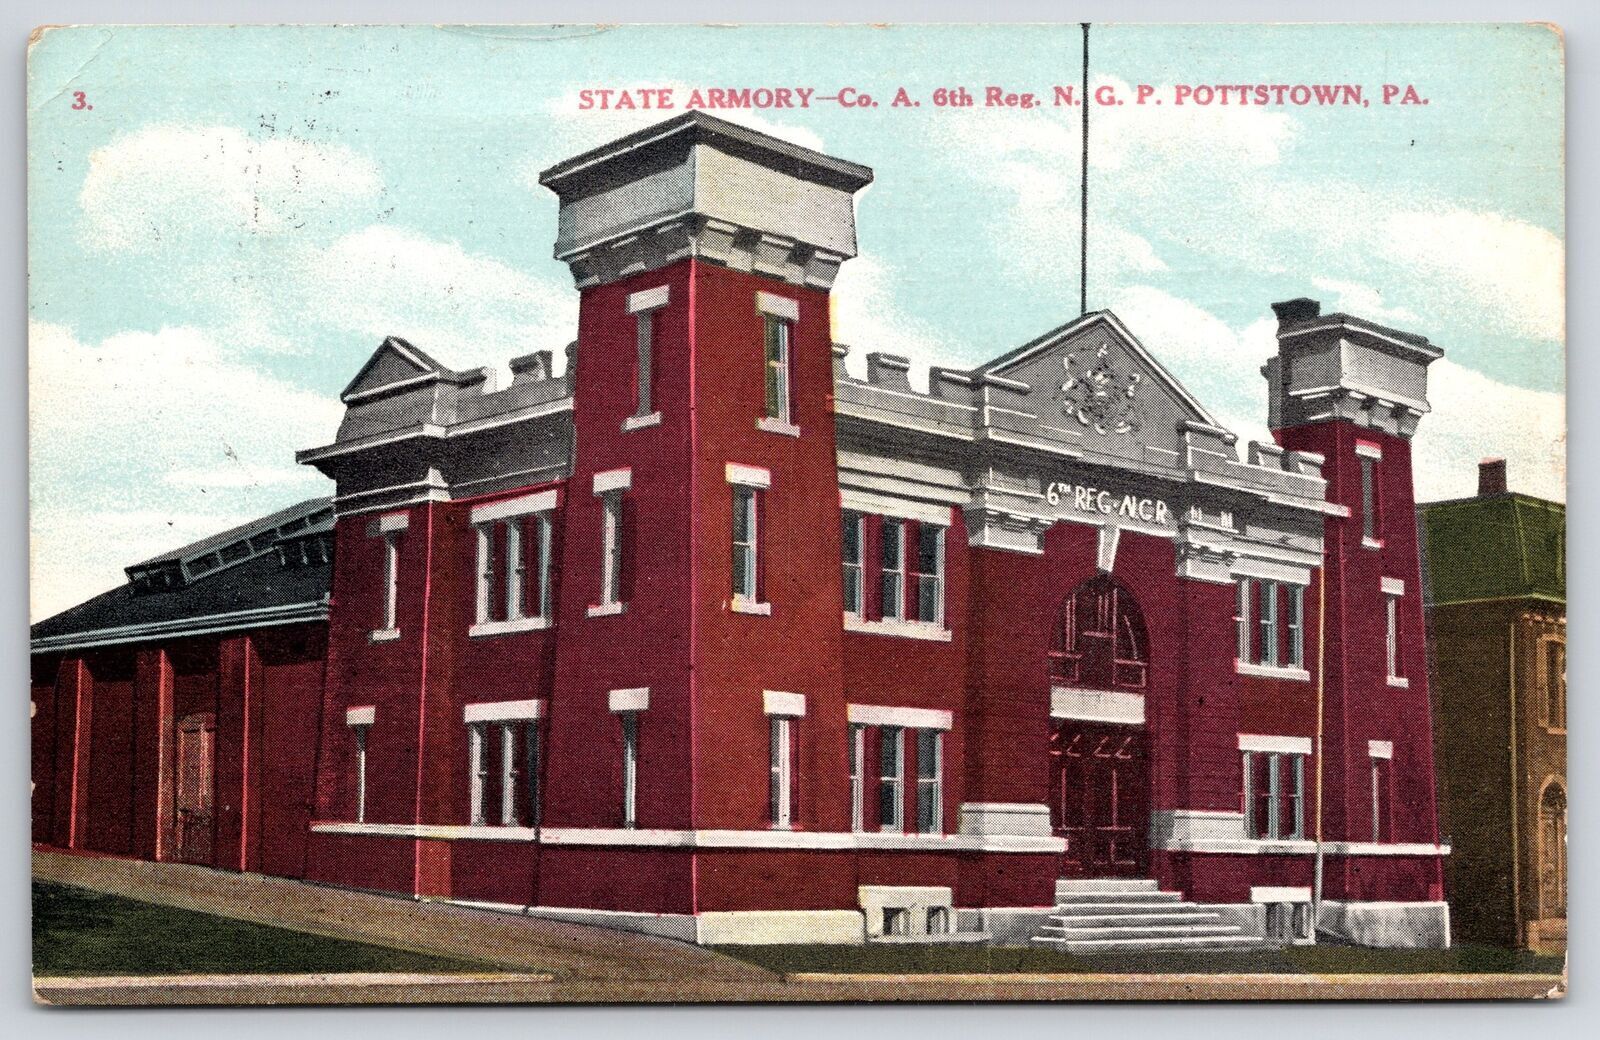 Pottstown PA-Pennsylvania, 1909 State Armory N. G. P.  Entrance Vintage Postcard